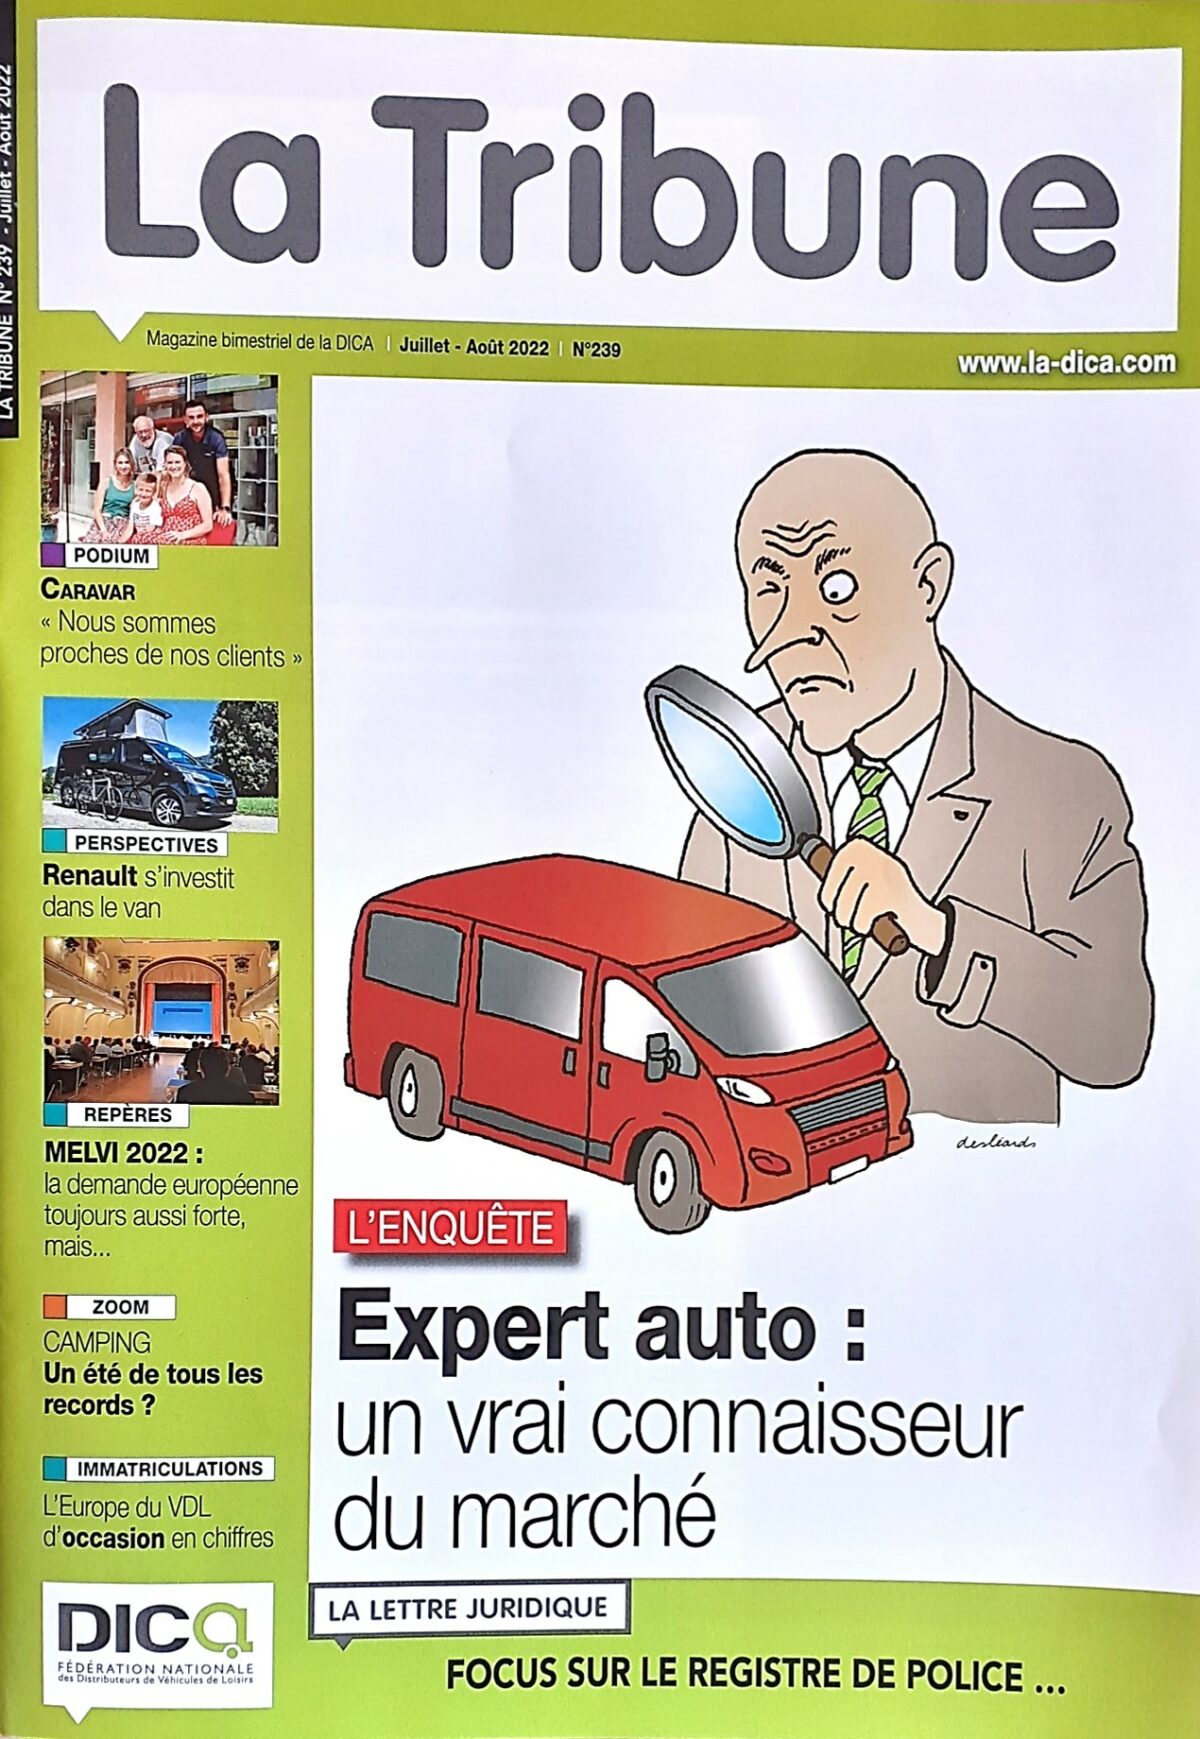 La Tribune /Dica – Expert auto : un vrai connaisseur du marché